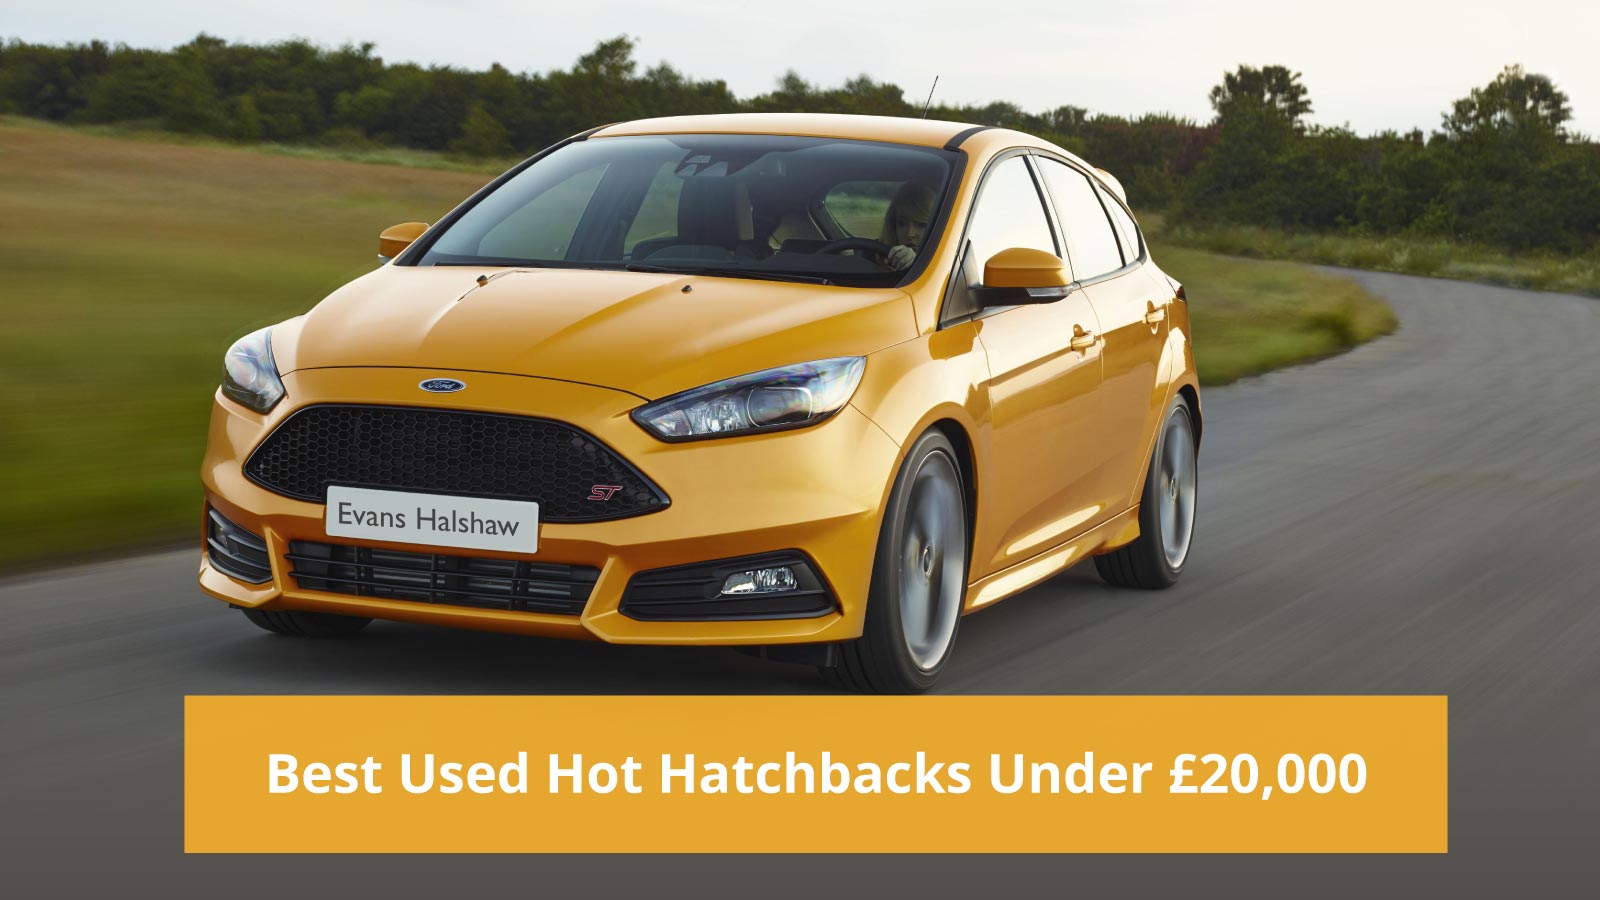 Best Used Hot Hatchbacks Under £20,000